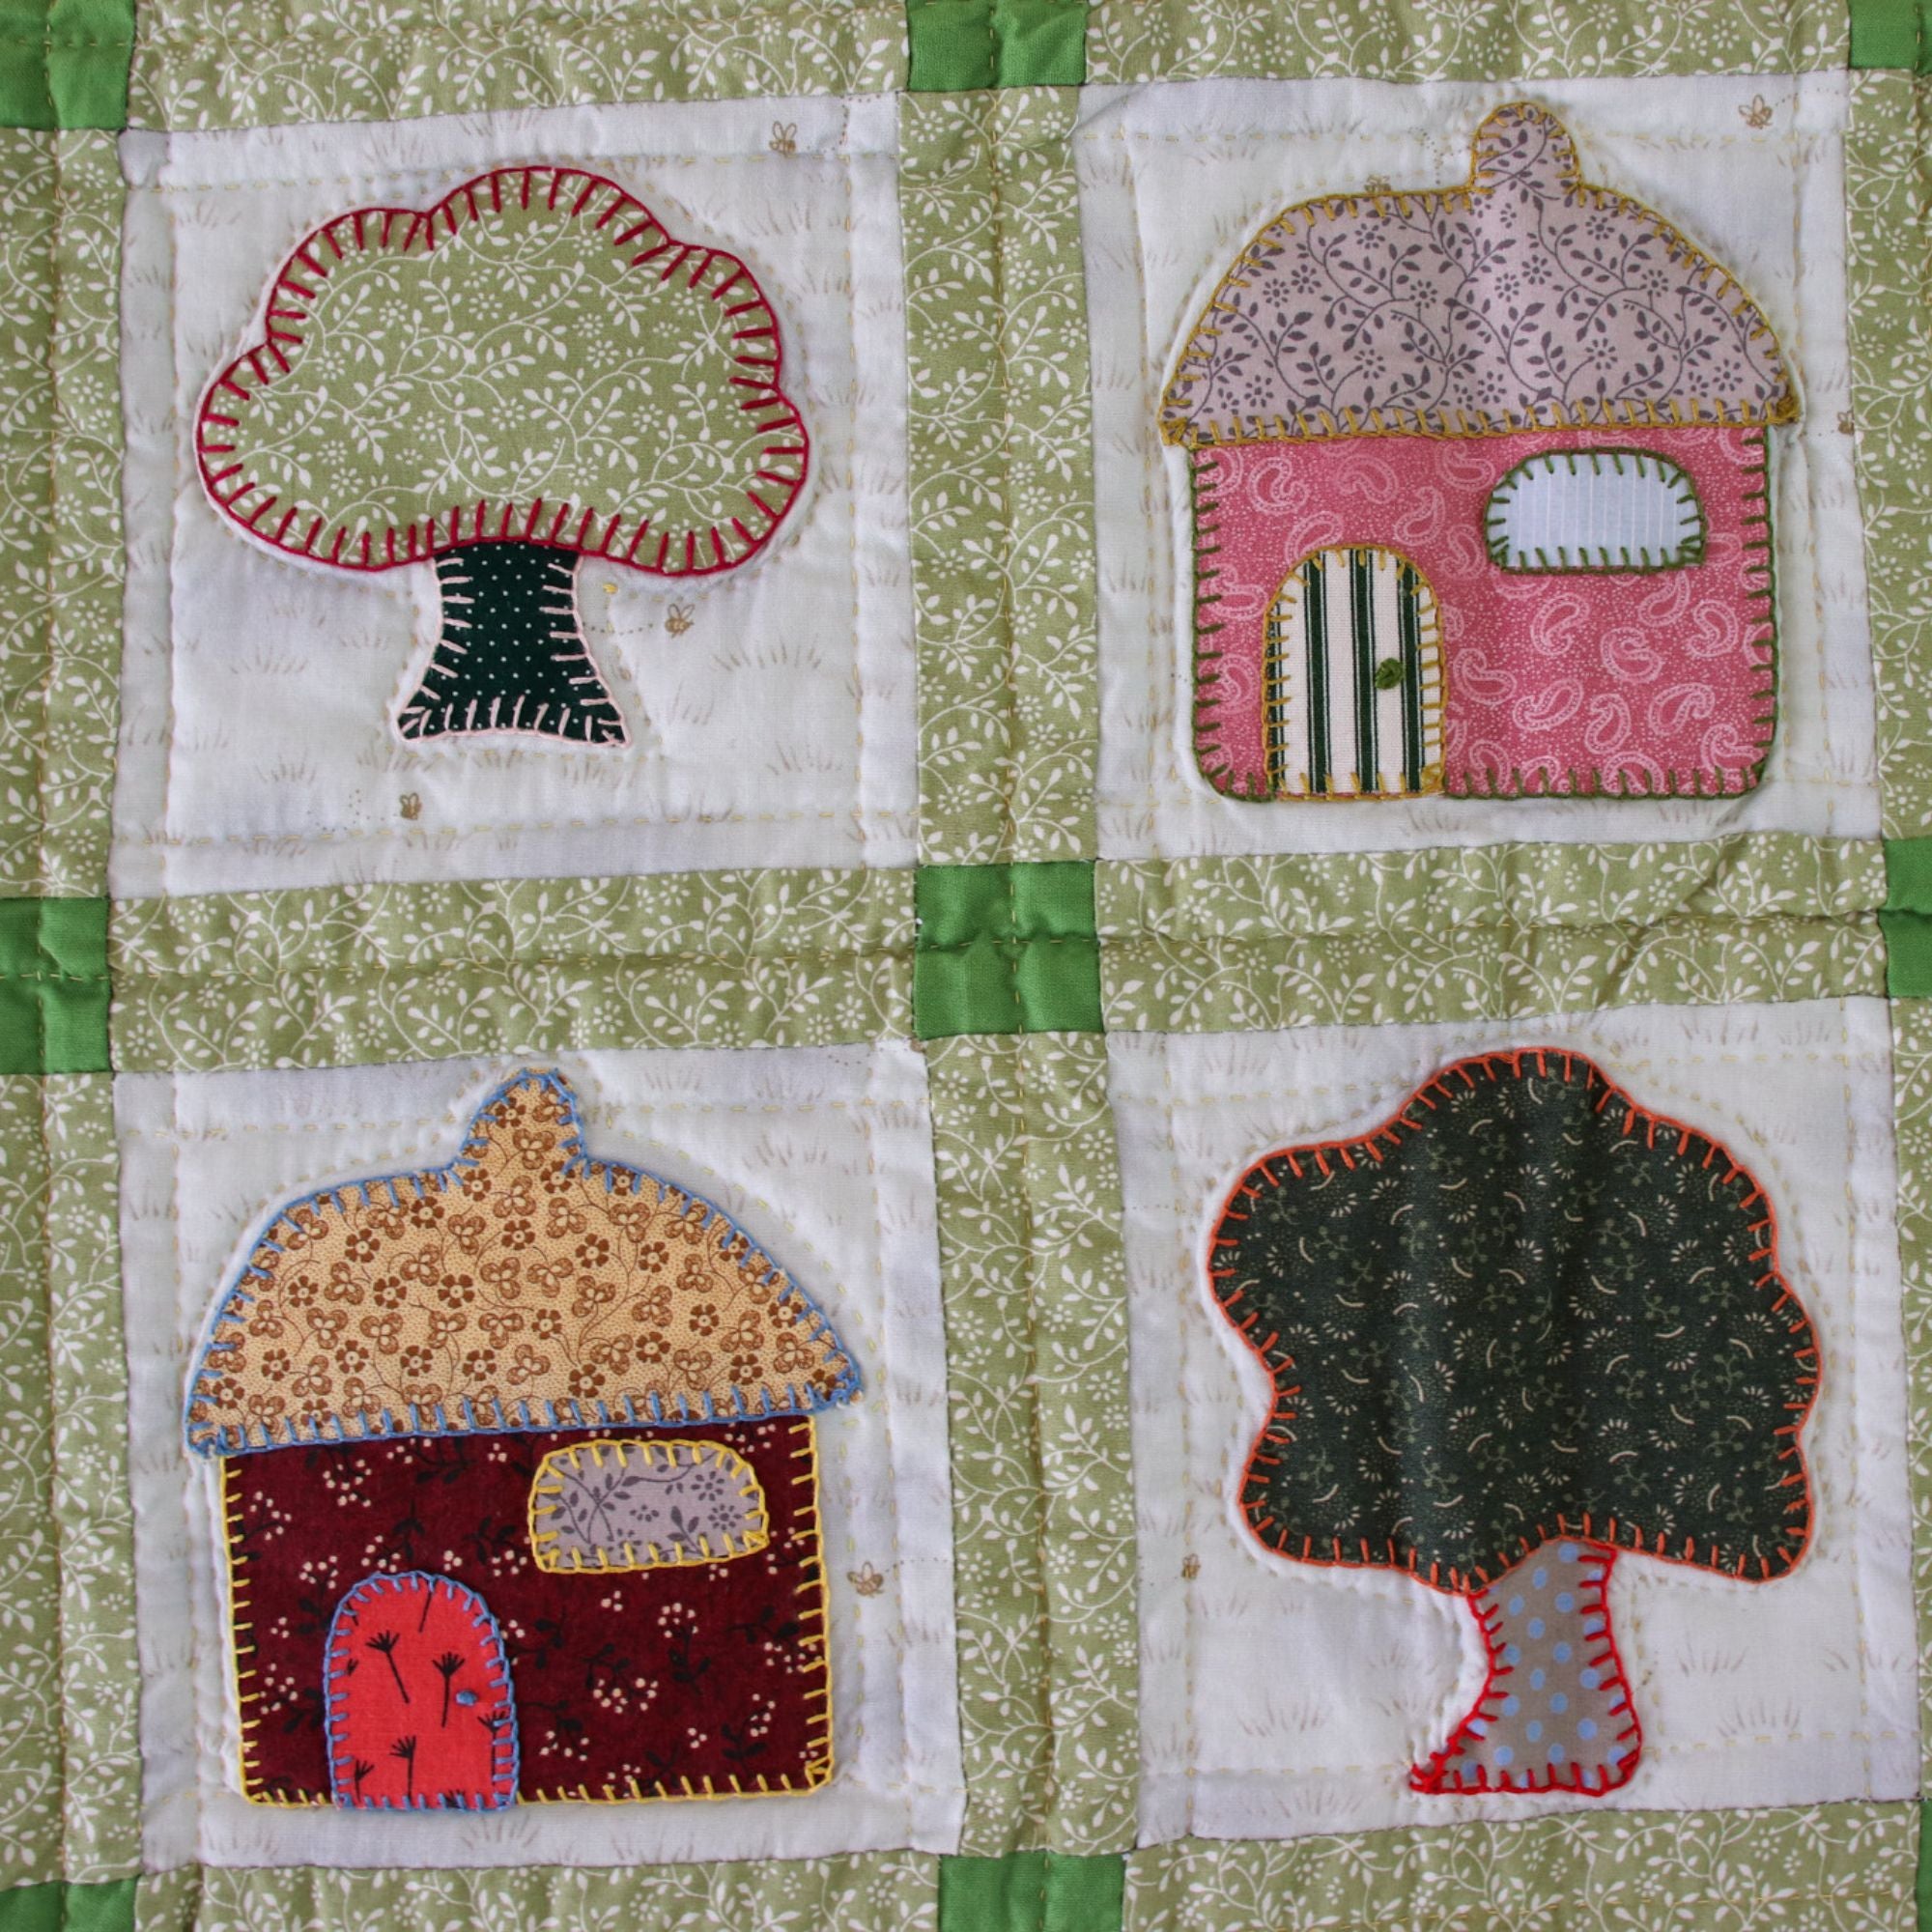 Children's Handmade 'Orchard Village' Quilt